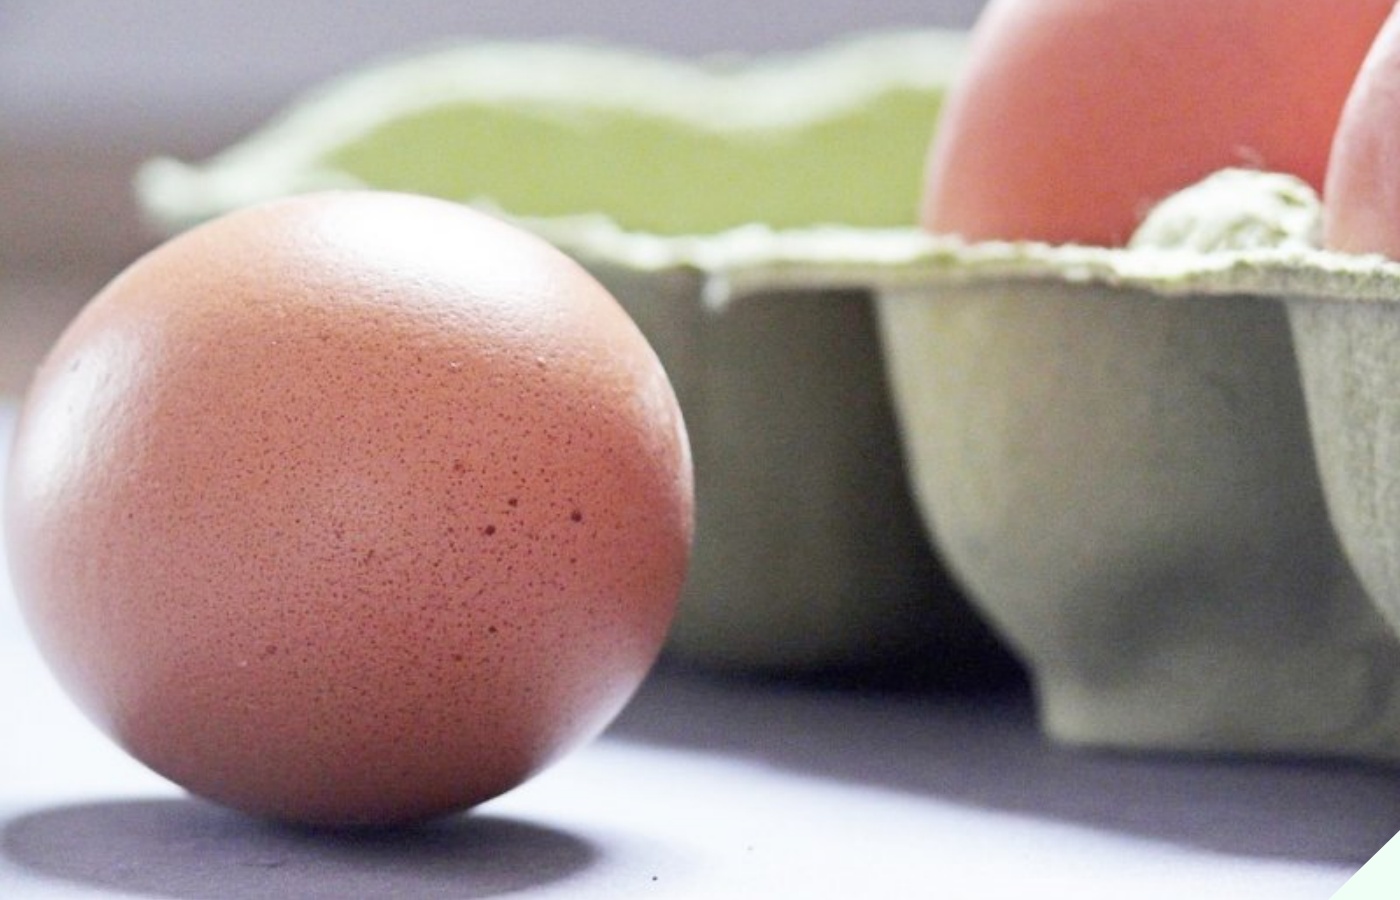 Cứ mua trứng về là cọ rửa thật sạch, chuyên gia lắc đầu nói sai lầm, bảo sao trứng nhanh hỏng, mất sạch chất dinh dưỡng - 2